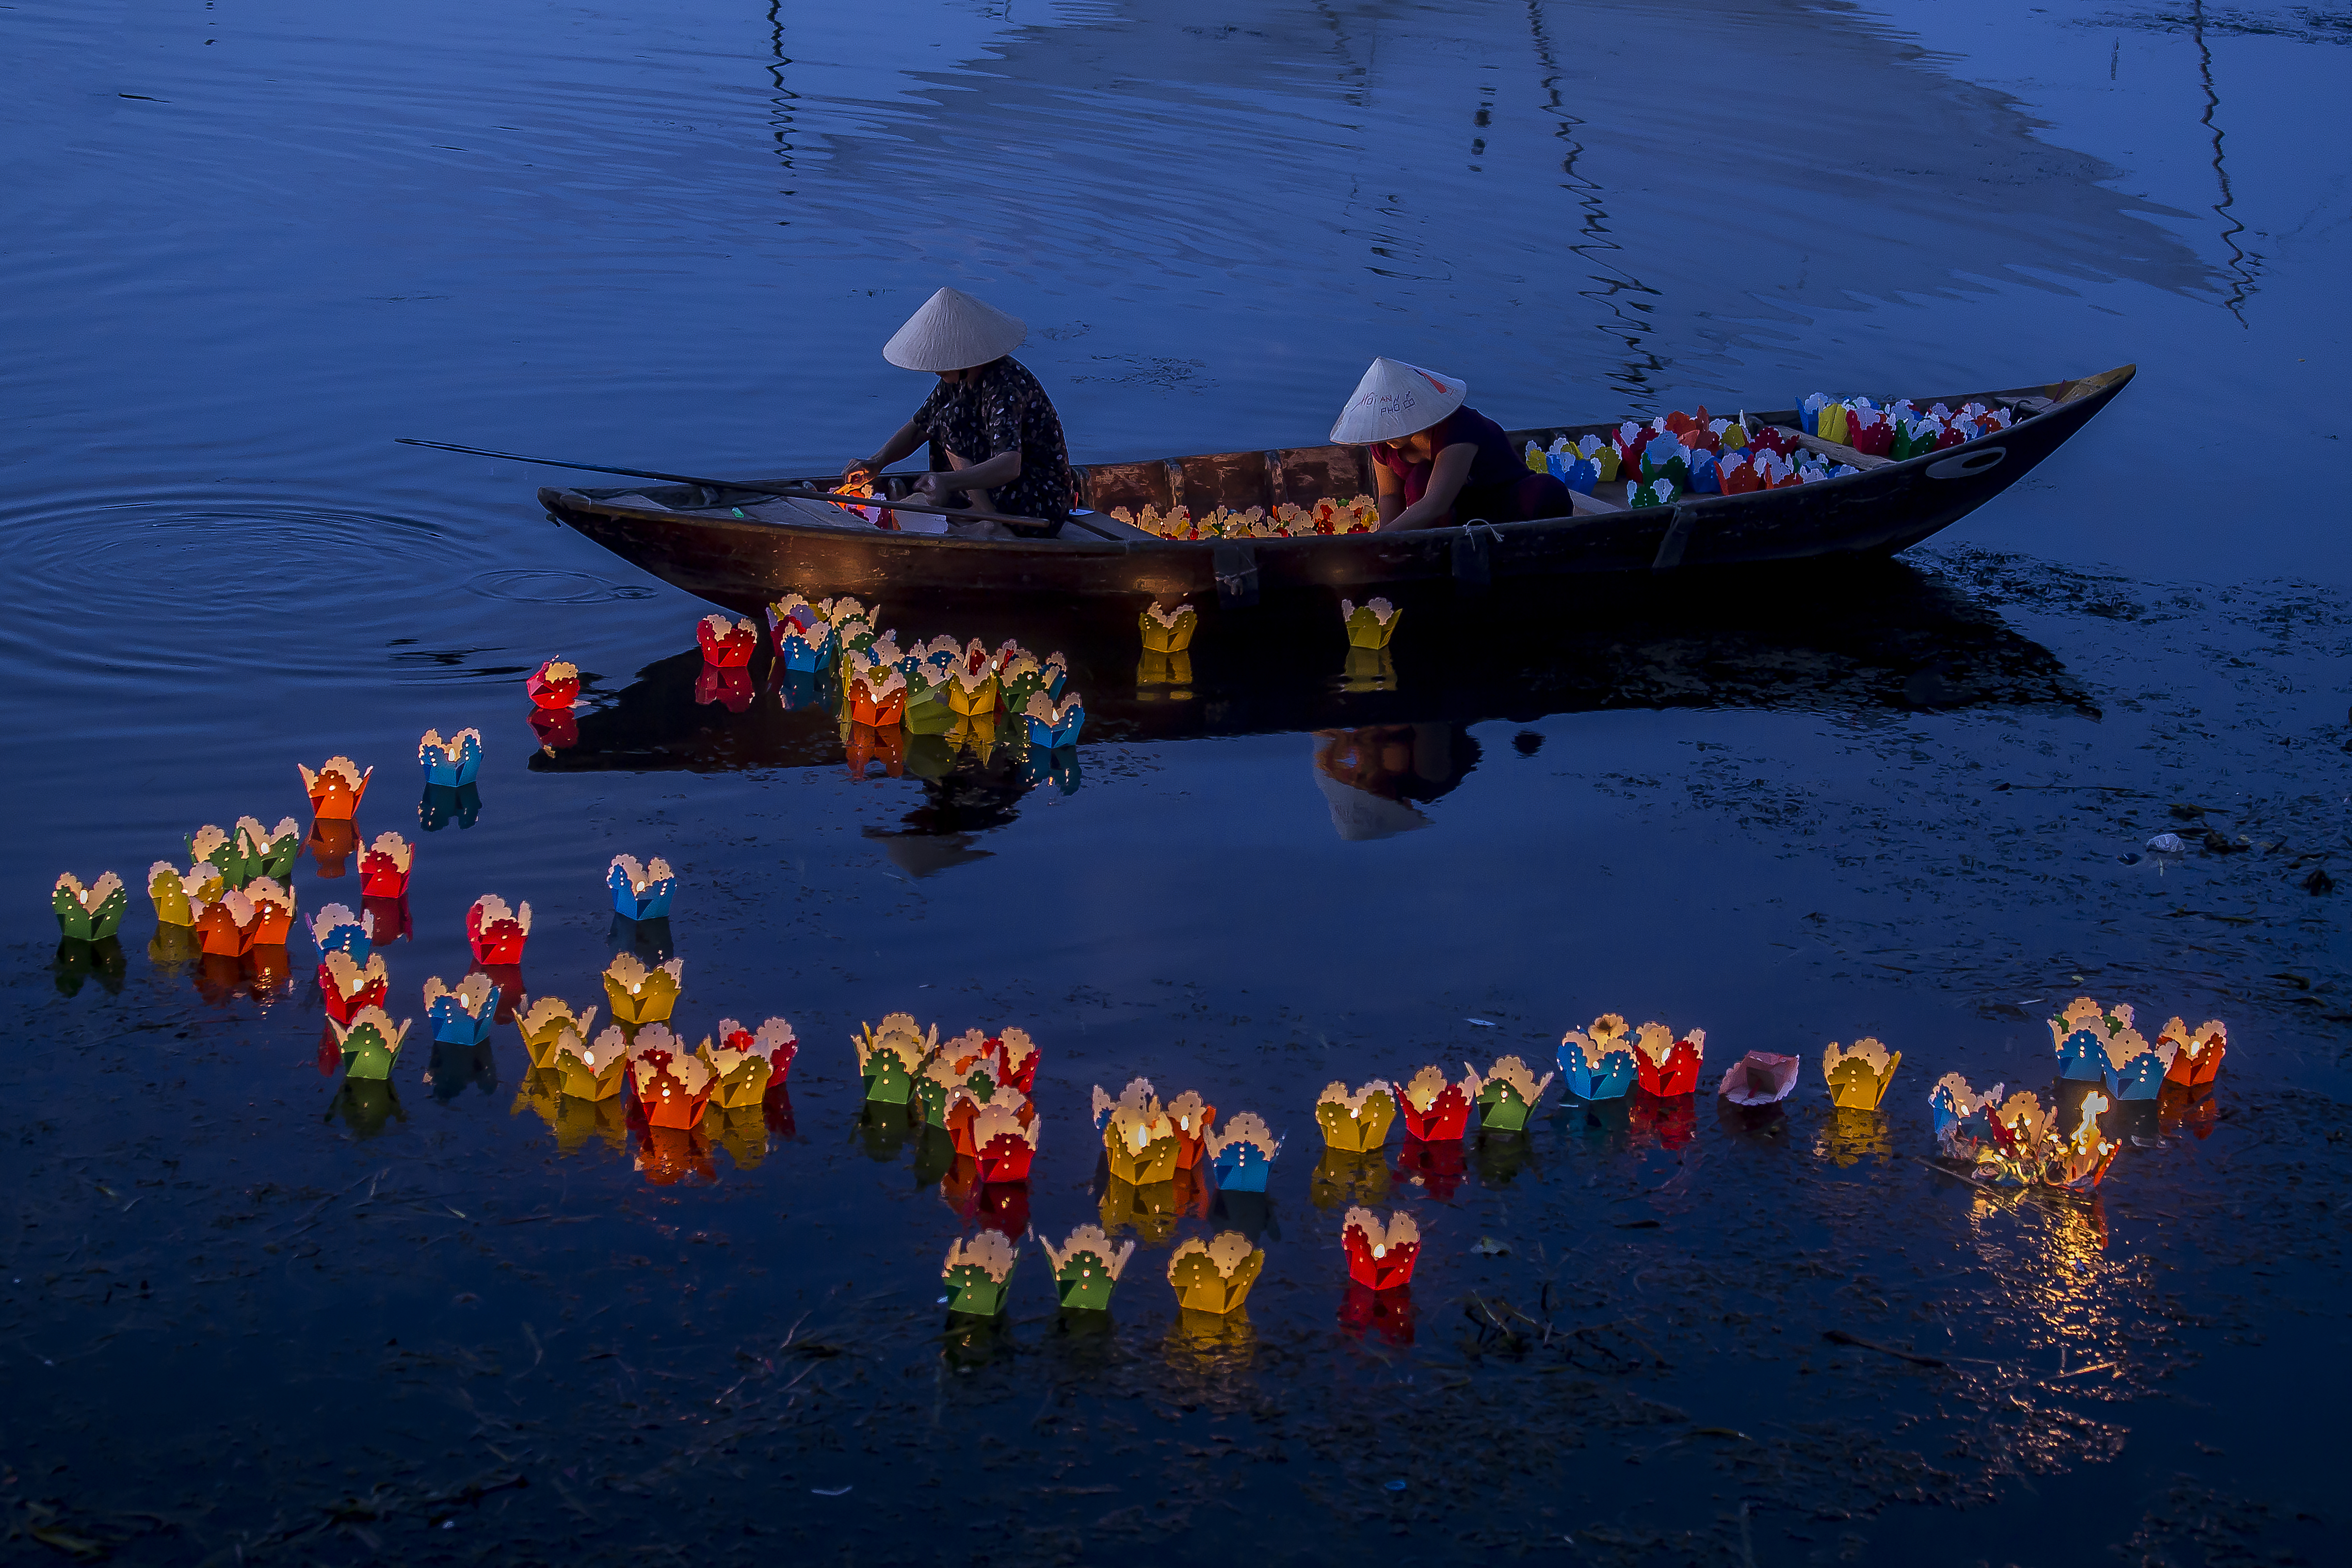 Flower lanterns